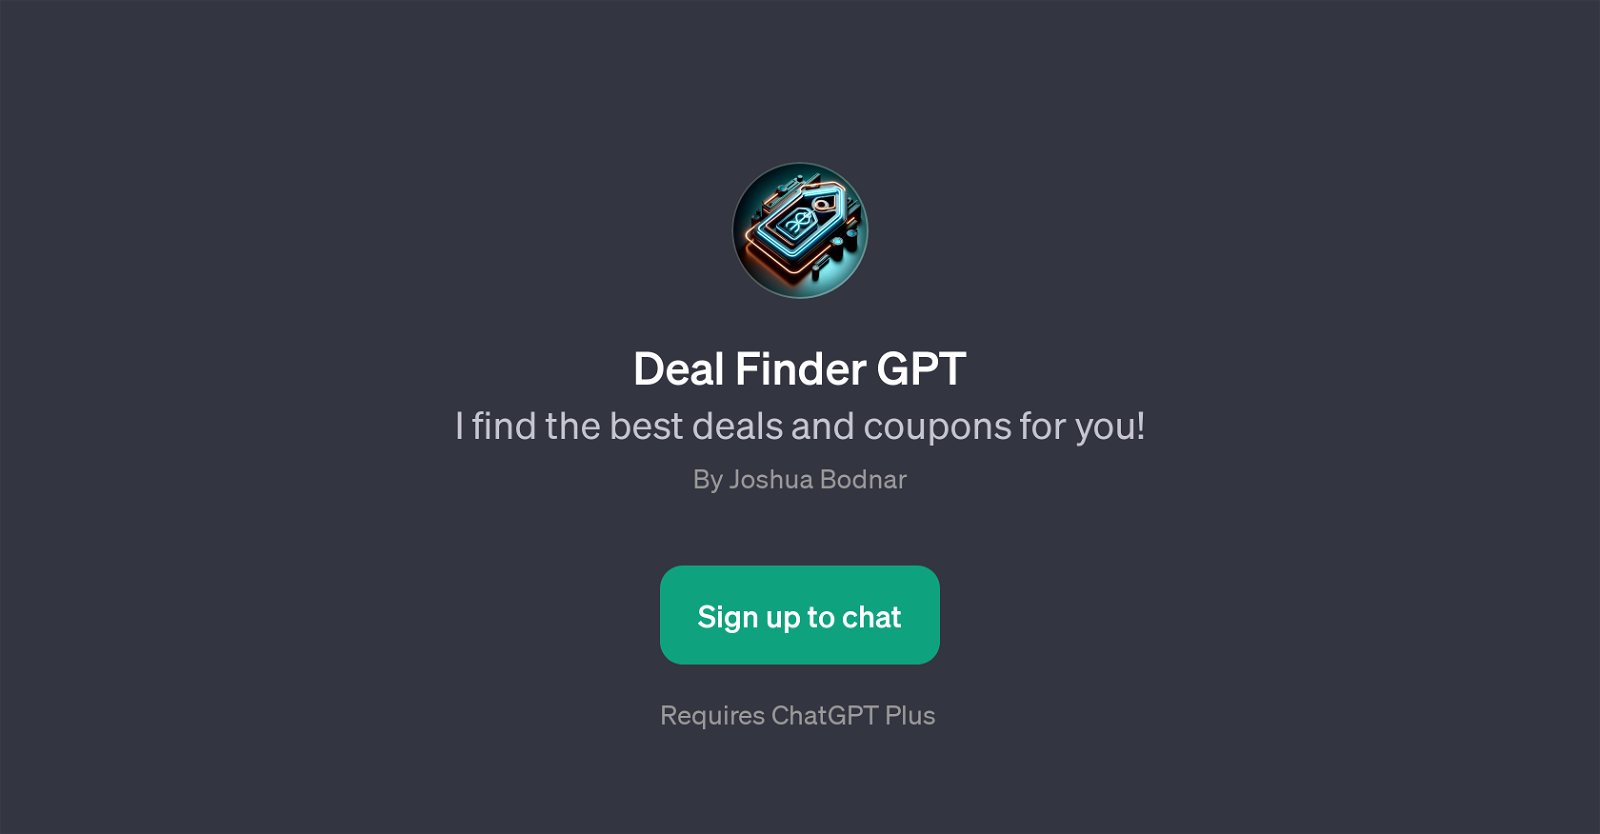 Deal Finder GPT website